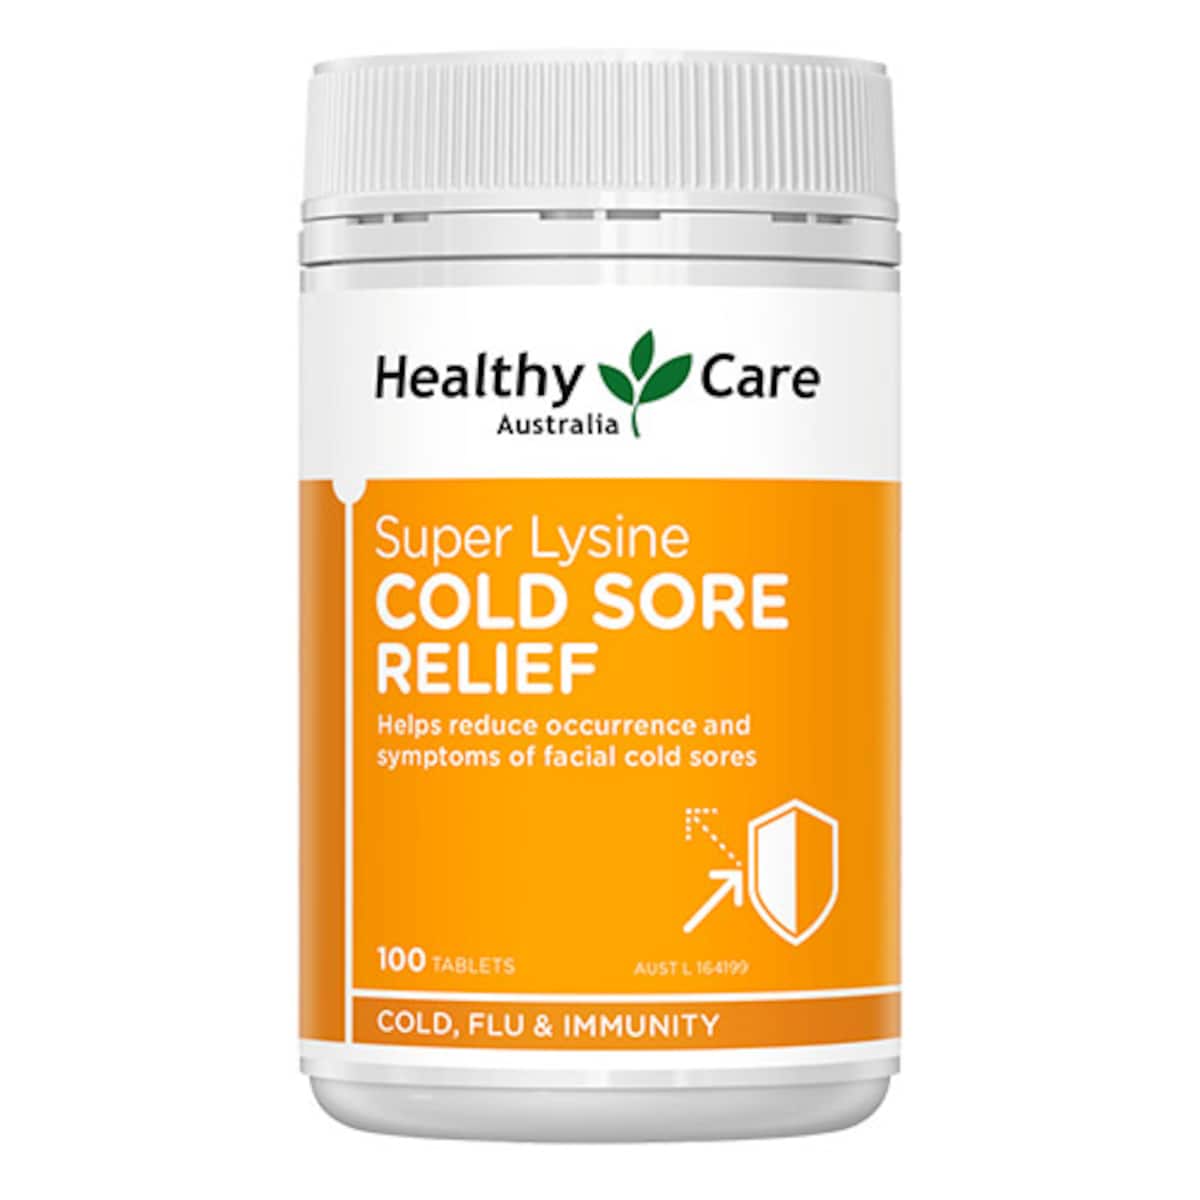 Healthy Care Super Lysine Cold Sore Relief 100 Tablets Australia